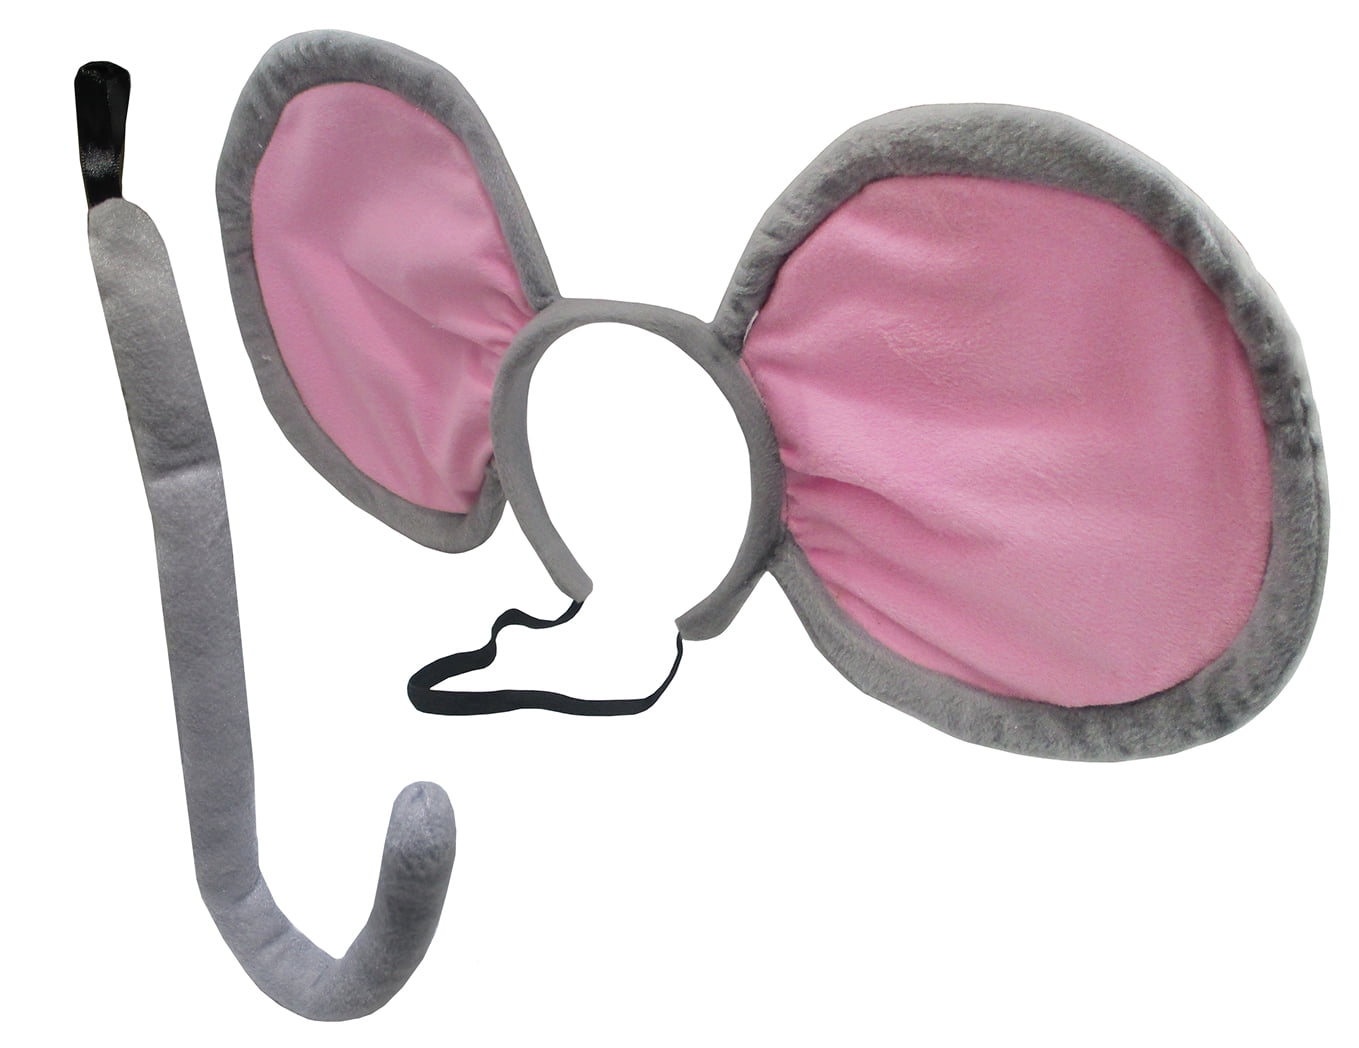 Giant Mouse Ears Headband Tail Costume Accessory Set - Walmart.com